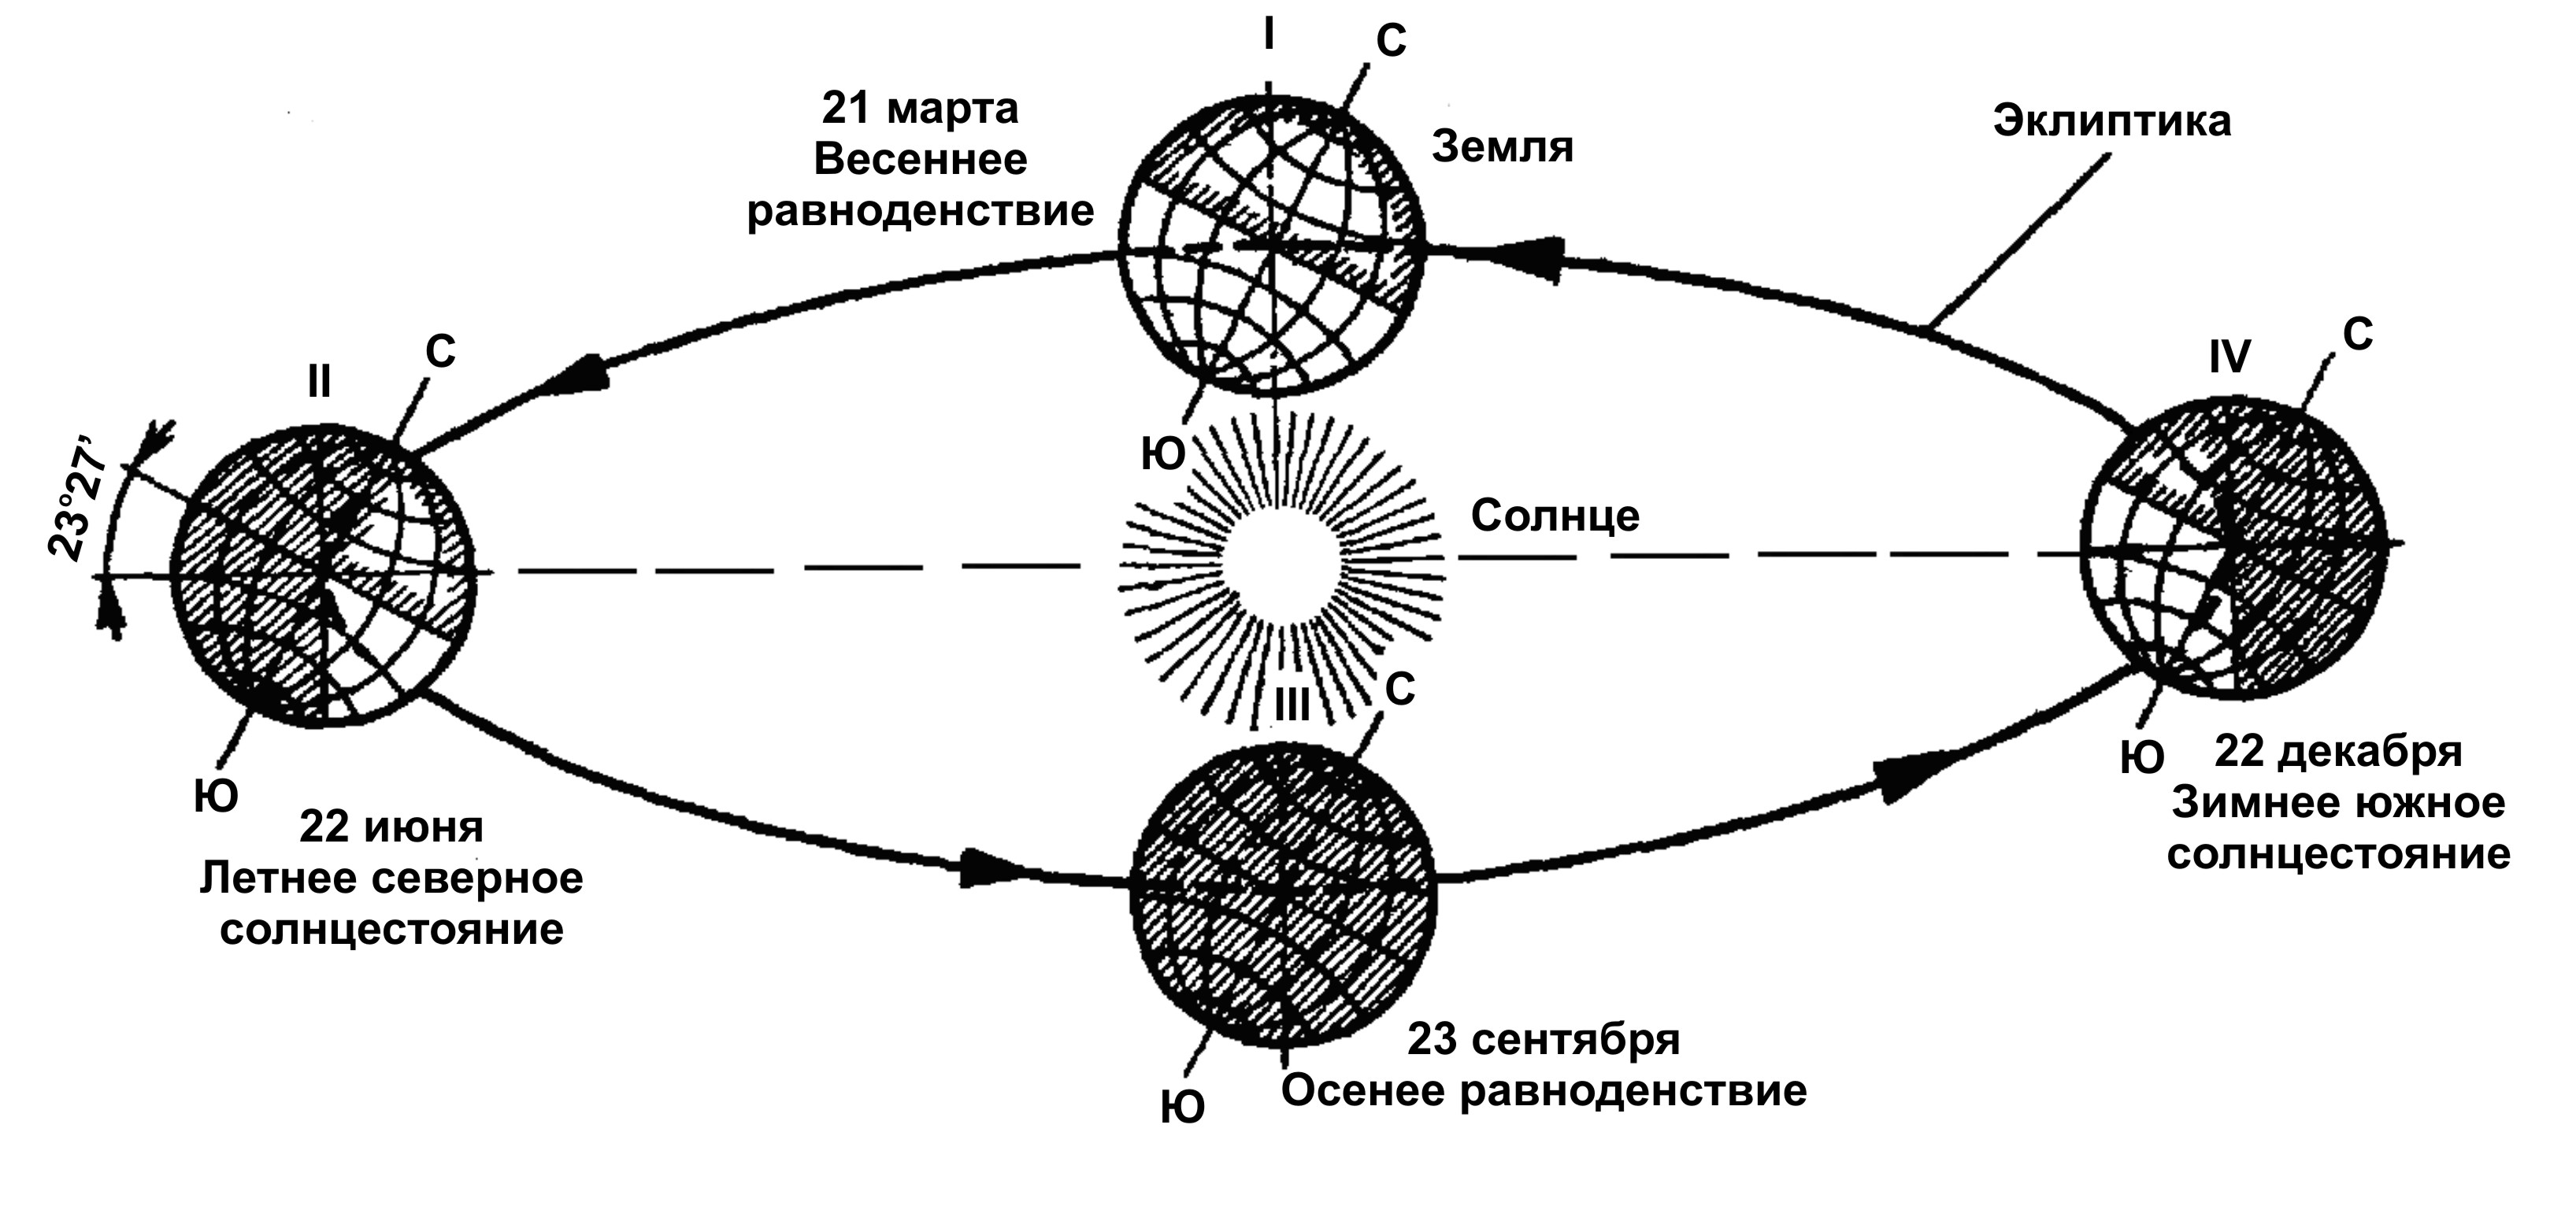 Перемещающаяся ось вращения. Схема движения земли вокруг солнца. Схема оборота земли вокруг солнца. Схема орбиты земли вокруг солнца. Схема годового вращения земли вокруг солнца.